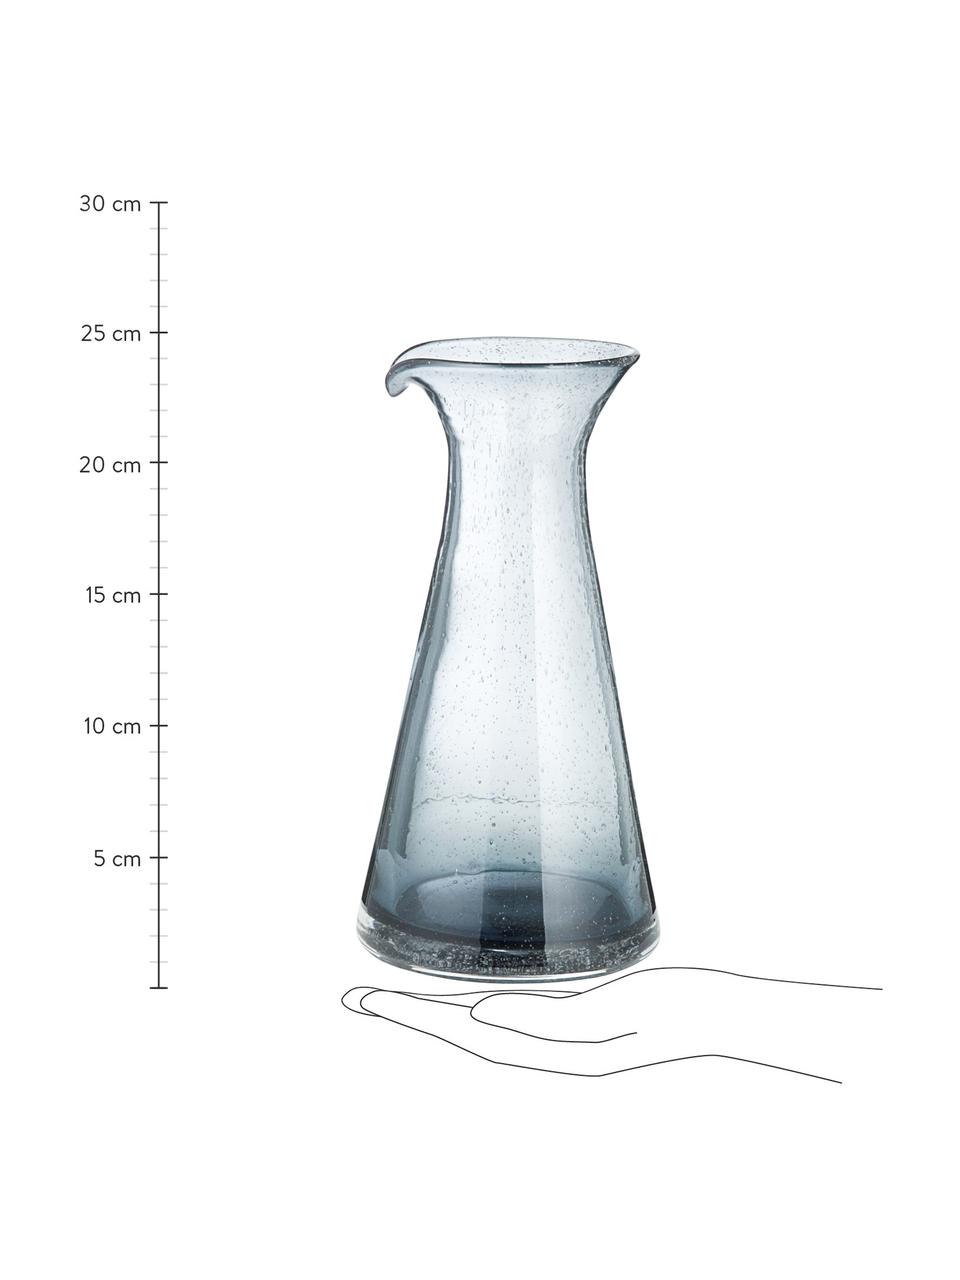 Karafka ze szkła dmuchanego Bubble, 800 ml, Szkło, Transparentnyny, szary, W 25 cm, 800 ml